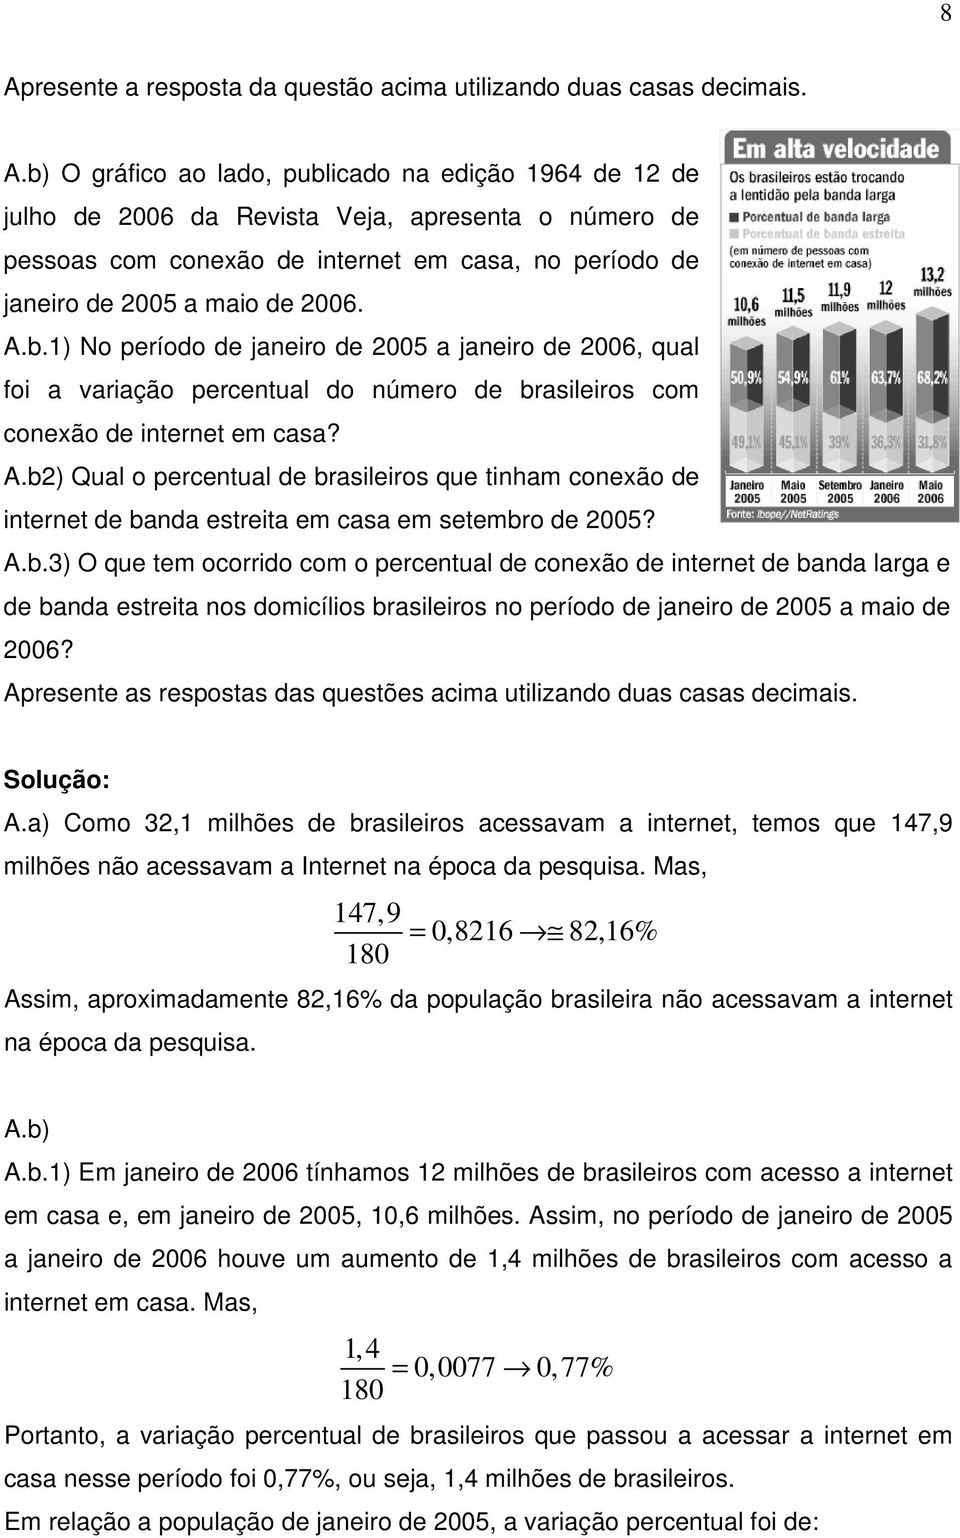 b) Qual o percentual de brasileiros que tinham conexão de internet de banda estreita em casa em setembro de 005? A.b.3) O que tem ocorrido com o percentual de conexão de internet de banda larga e de banda estreita nos domicílios brasileiros no período de janeiro de 005 a maio de 006?